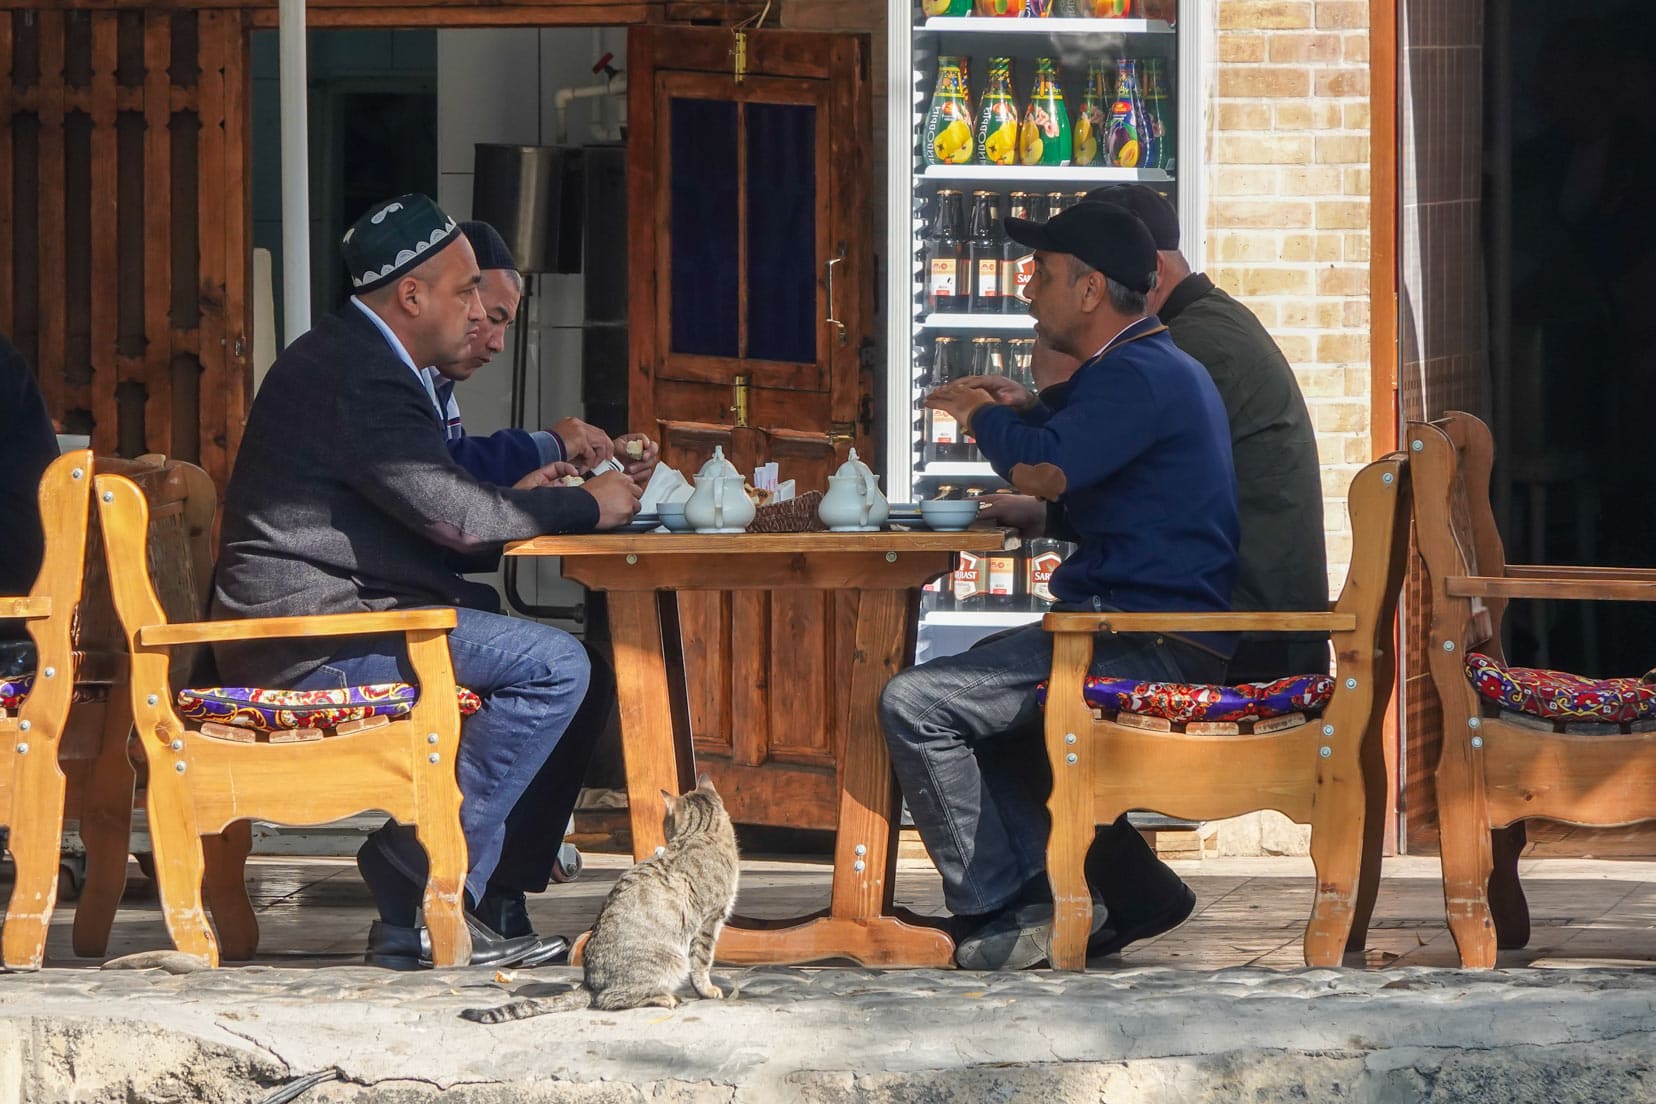 Uzbek-tea-with locals